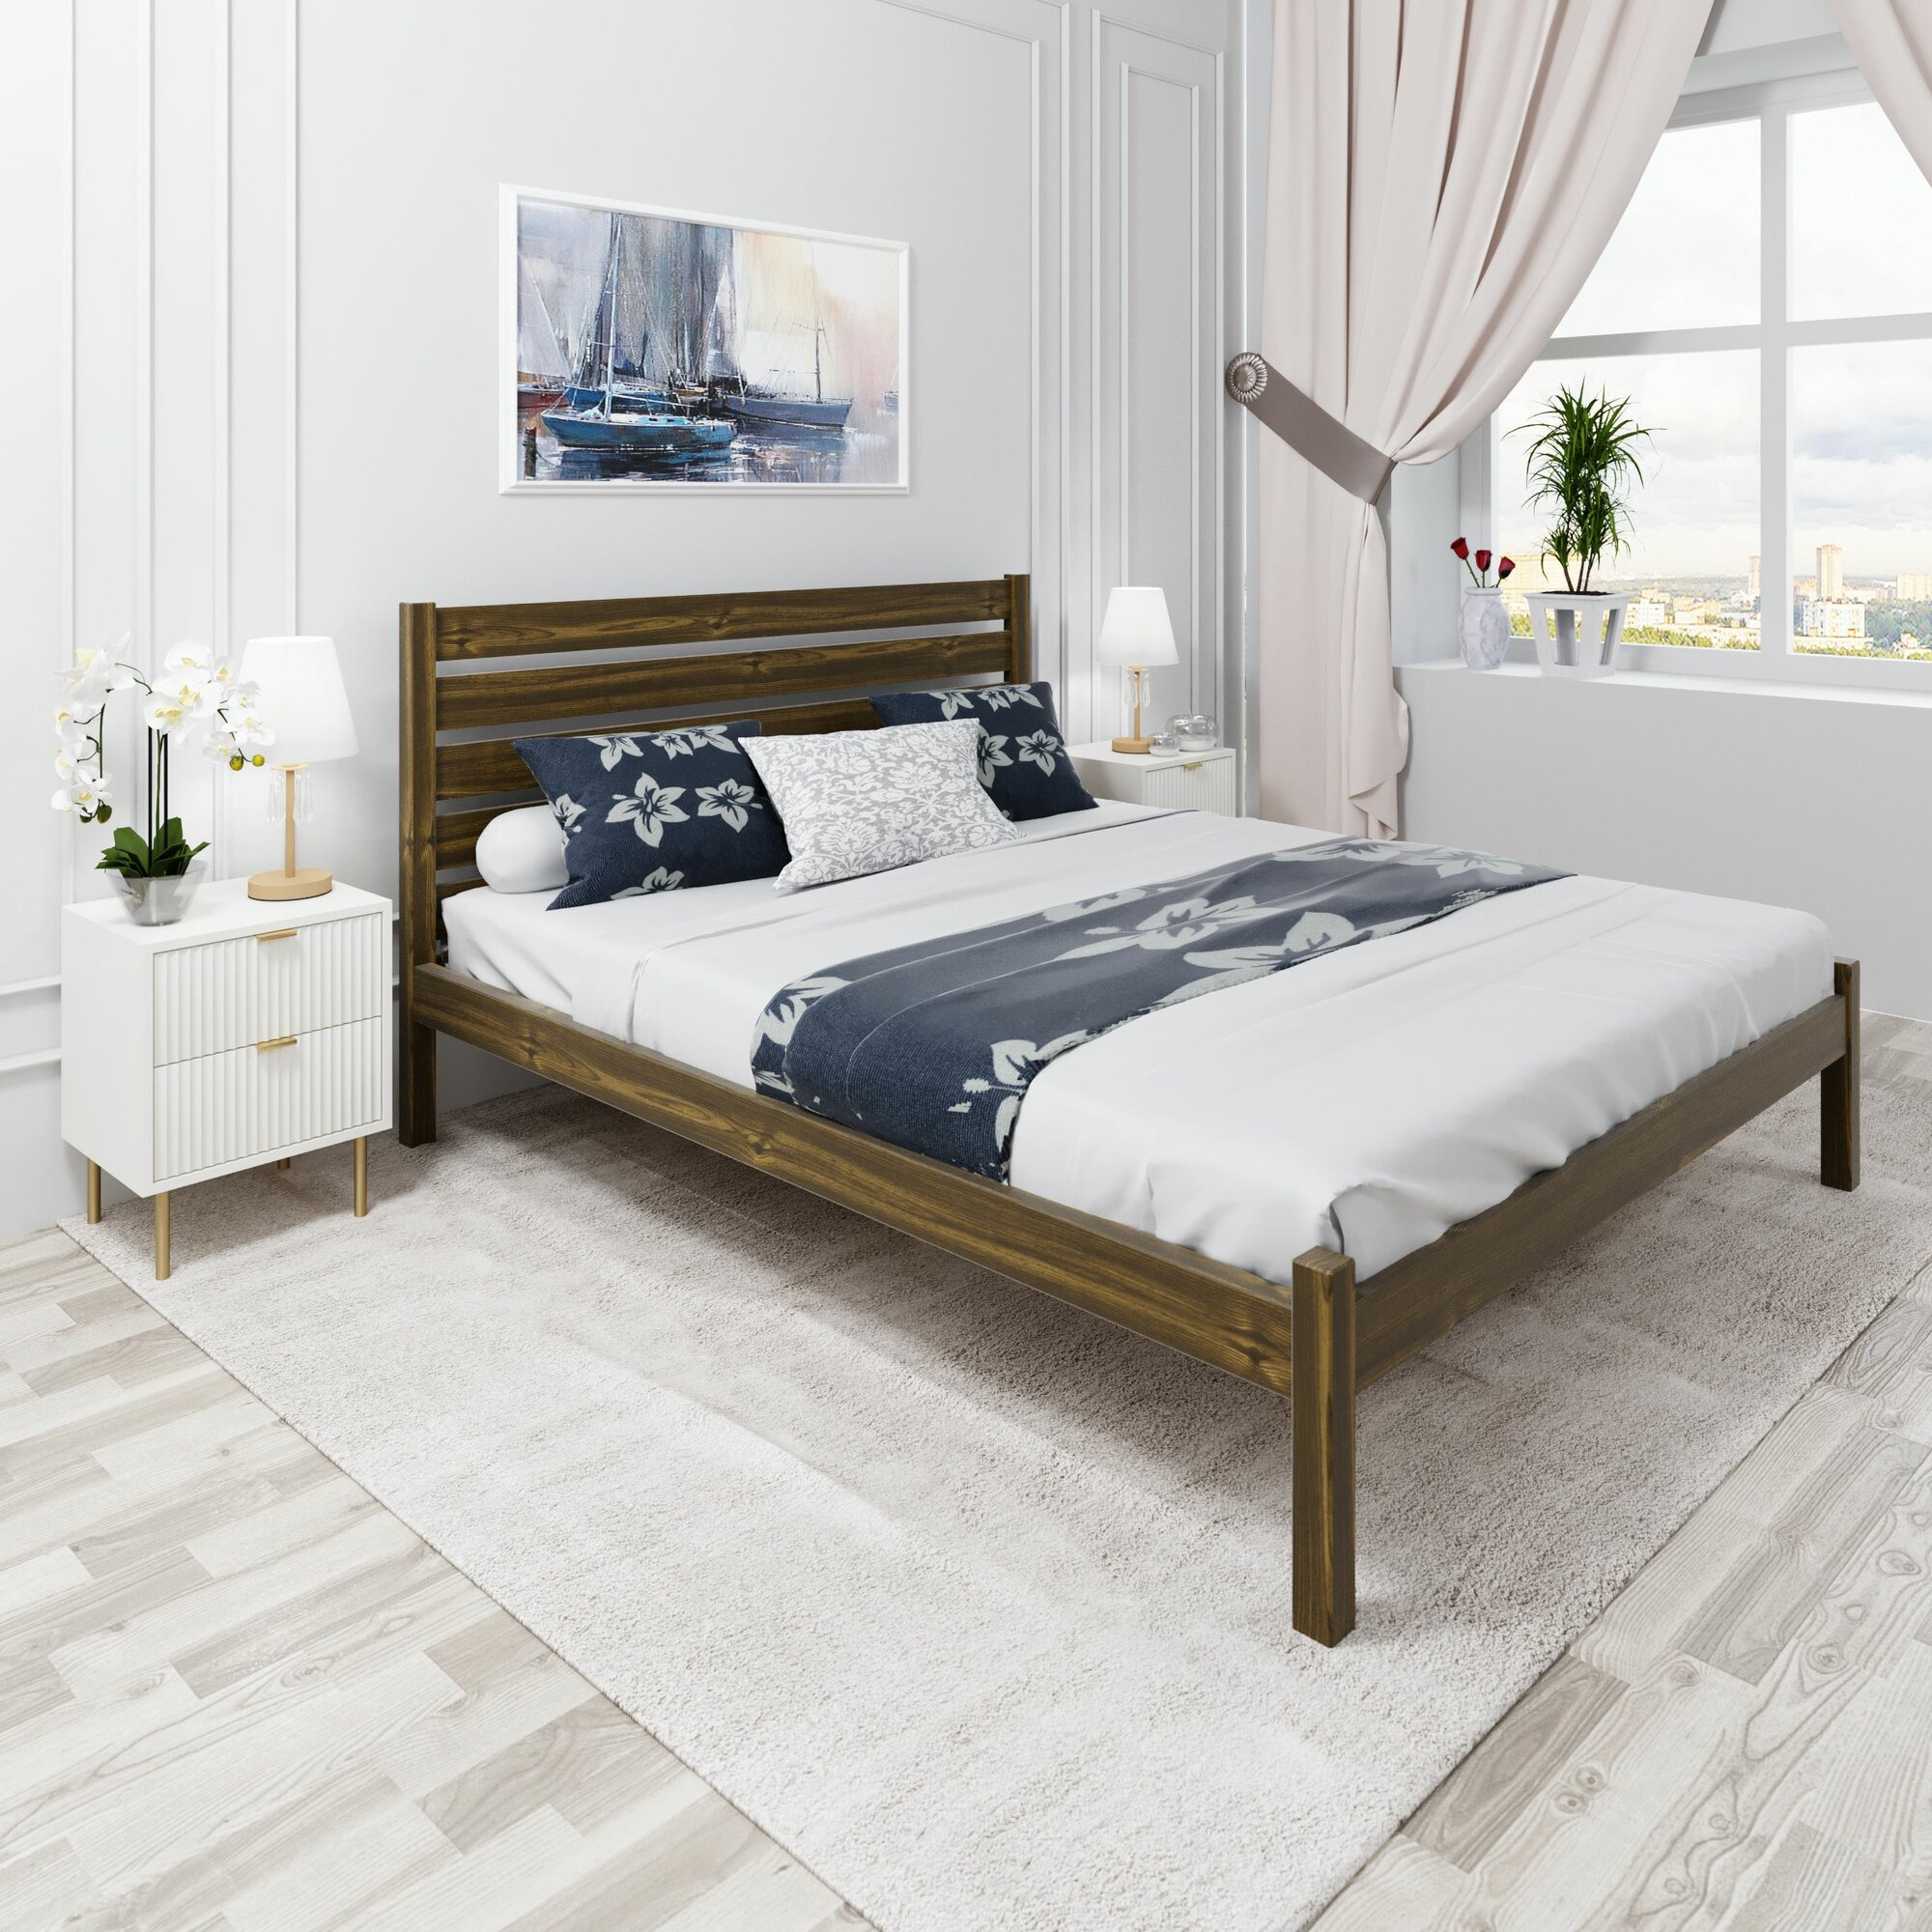 Кровать двуспальная Классика из массива сосны с высокой спинкой и реечным основанием, 200х180 см (габариты 210х190), цвет темного дуба